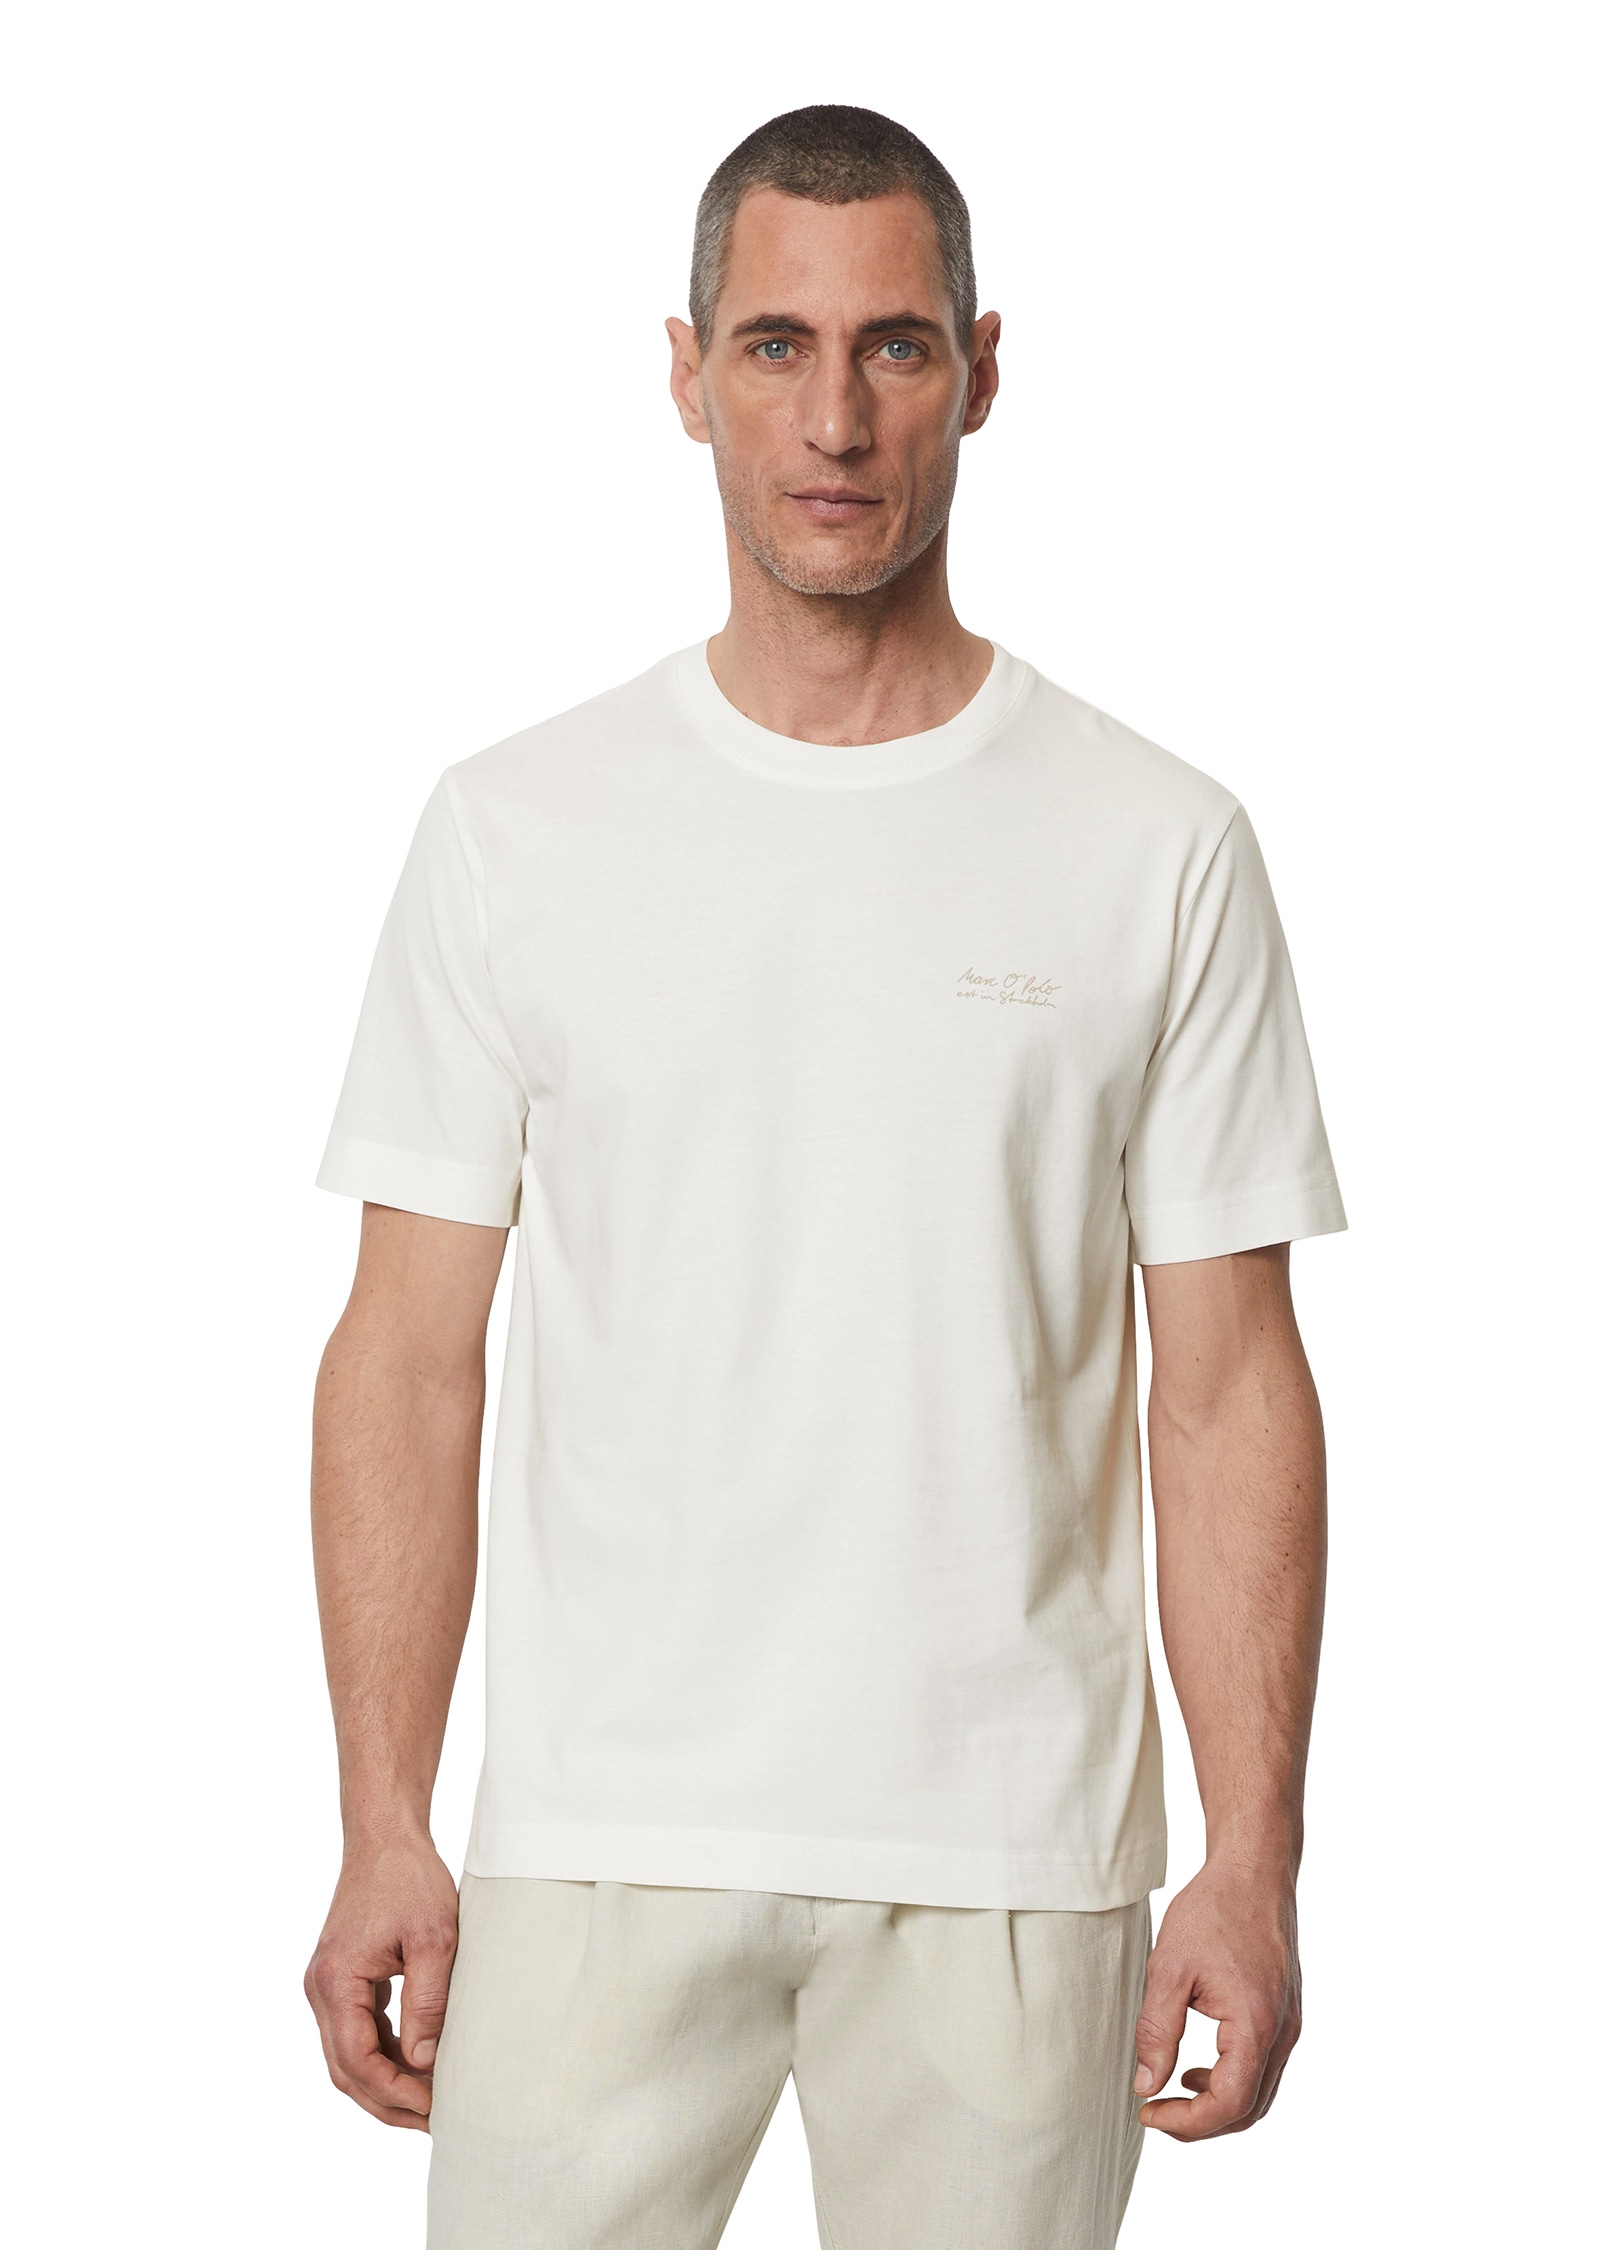 T-Shirt, Mit grossem Rückenprint, leichte Single-Jersey-Qualität